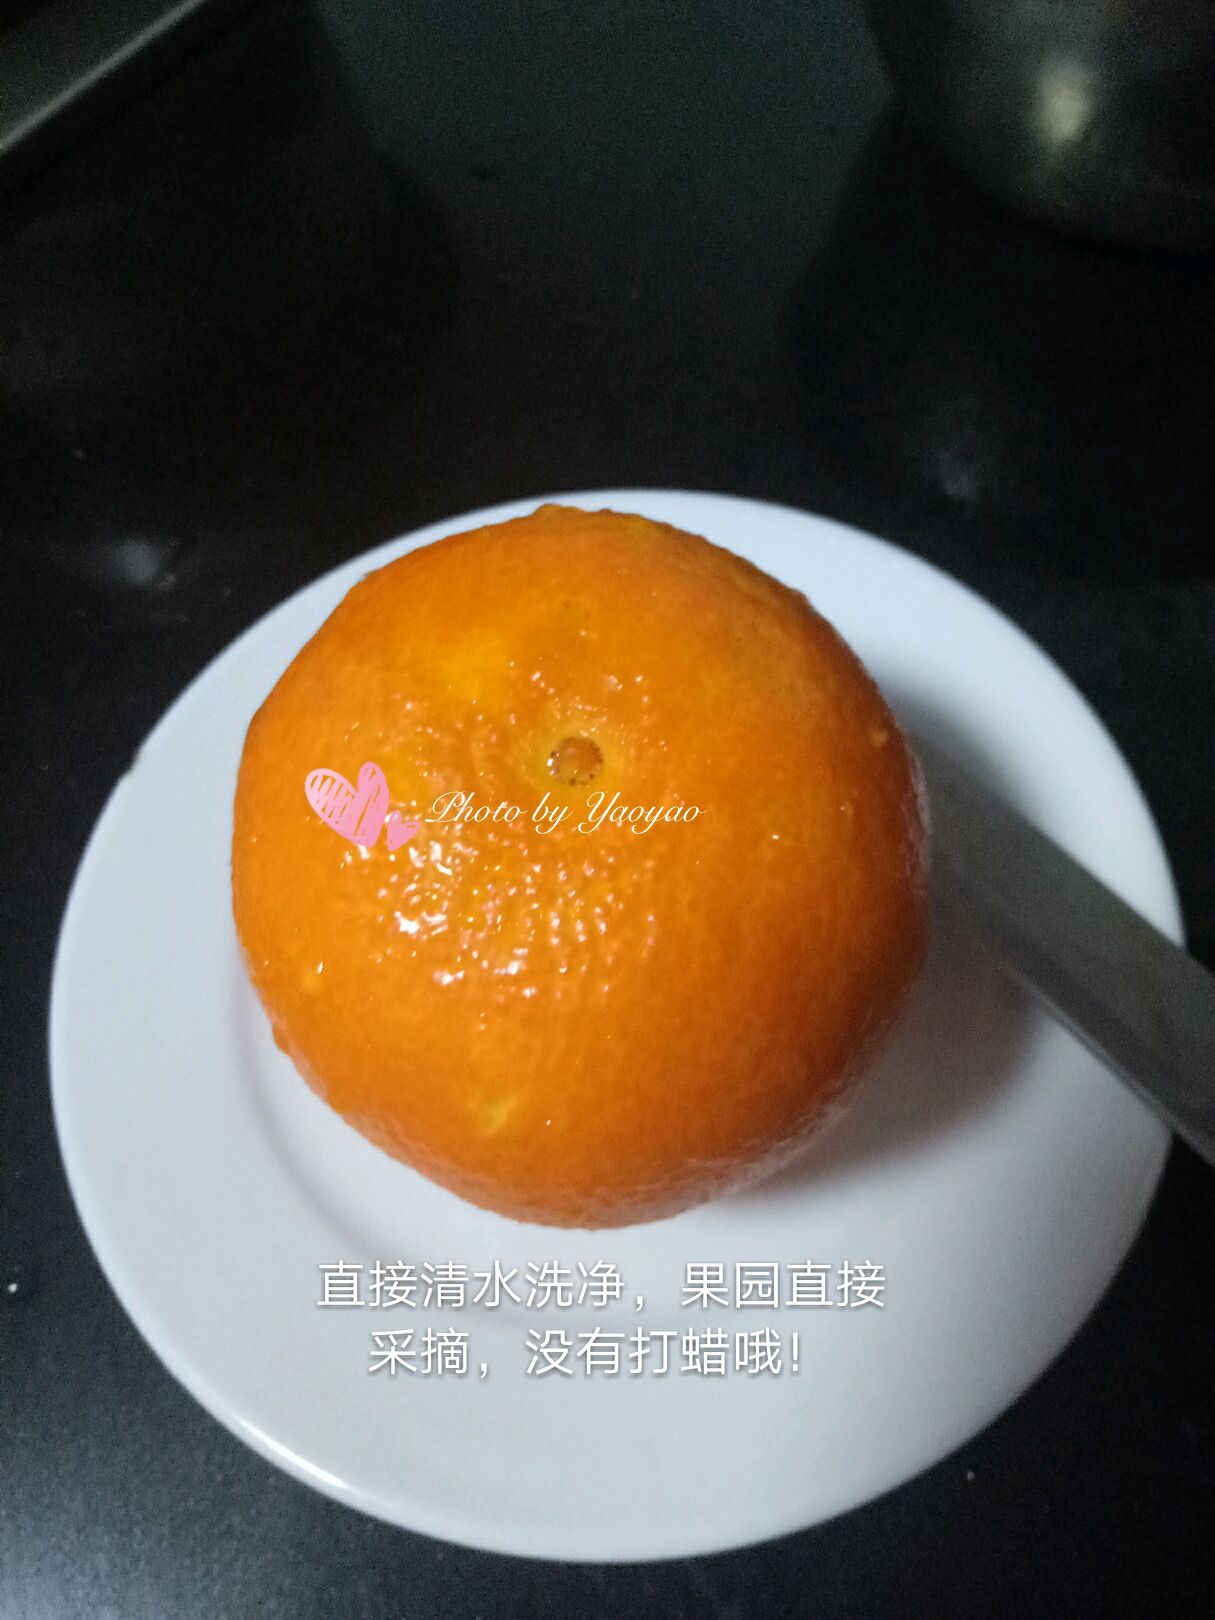 冰糖橙子的做法和特点及性质_中华康网